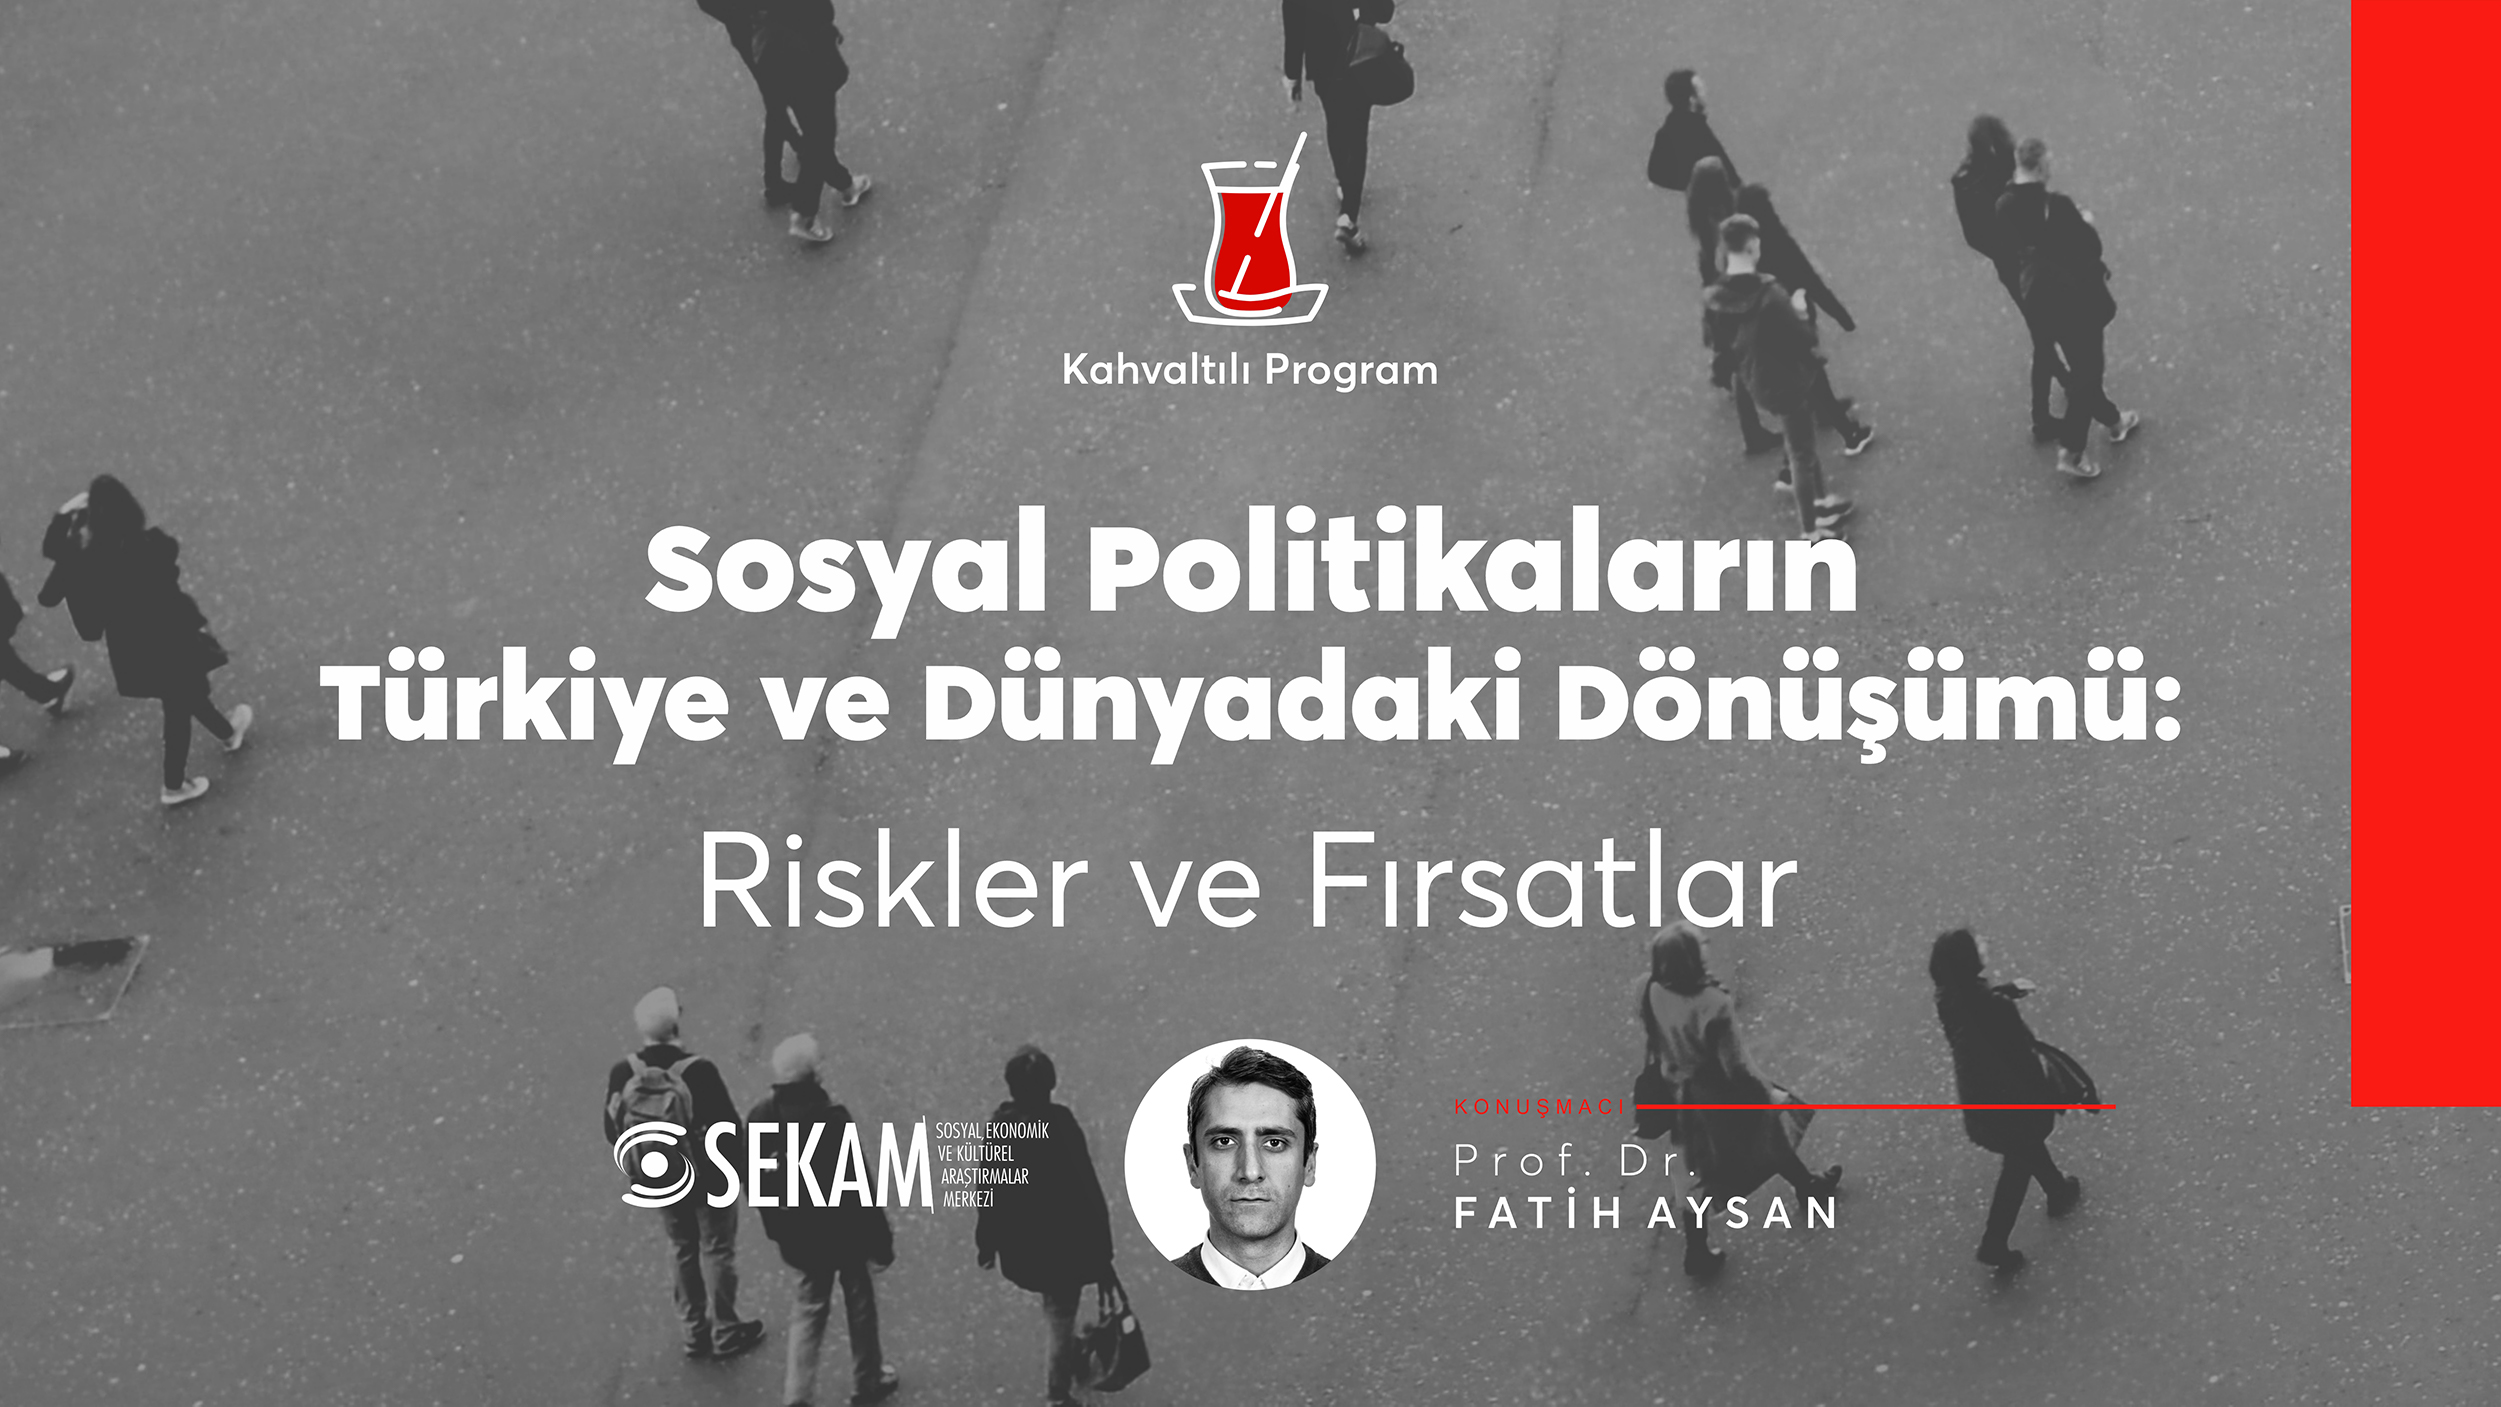 VİDEO! Sosyal Politikaların Türkiye ve Dünyadaki Dönüşümü: Riskler ve Fırsatlar / Prof. Dr. Fatih Aysan